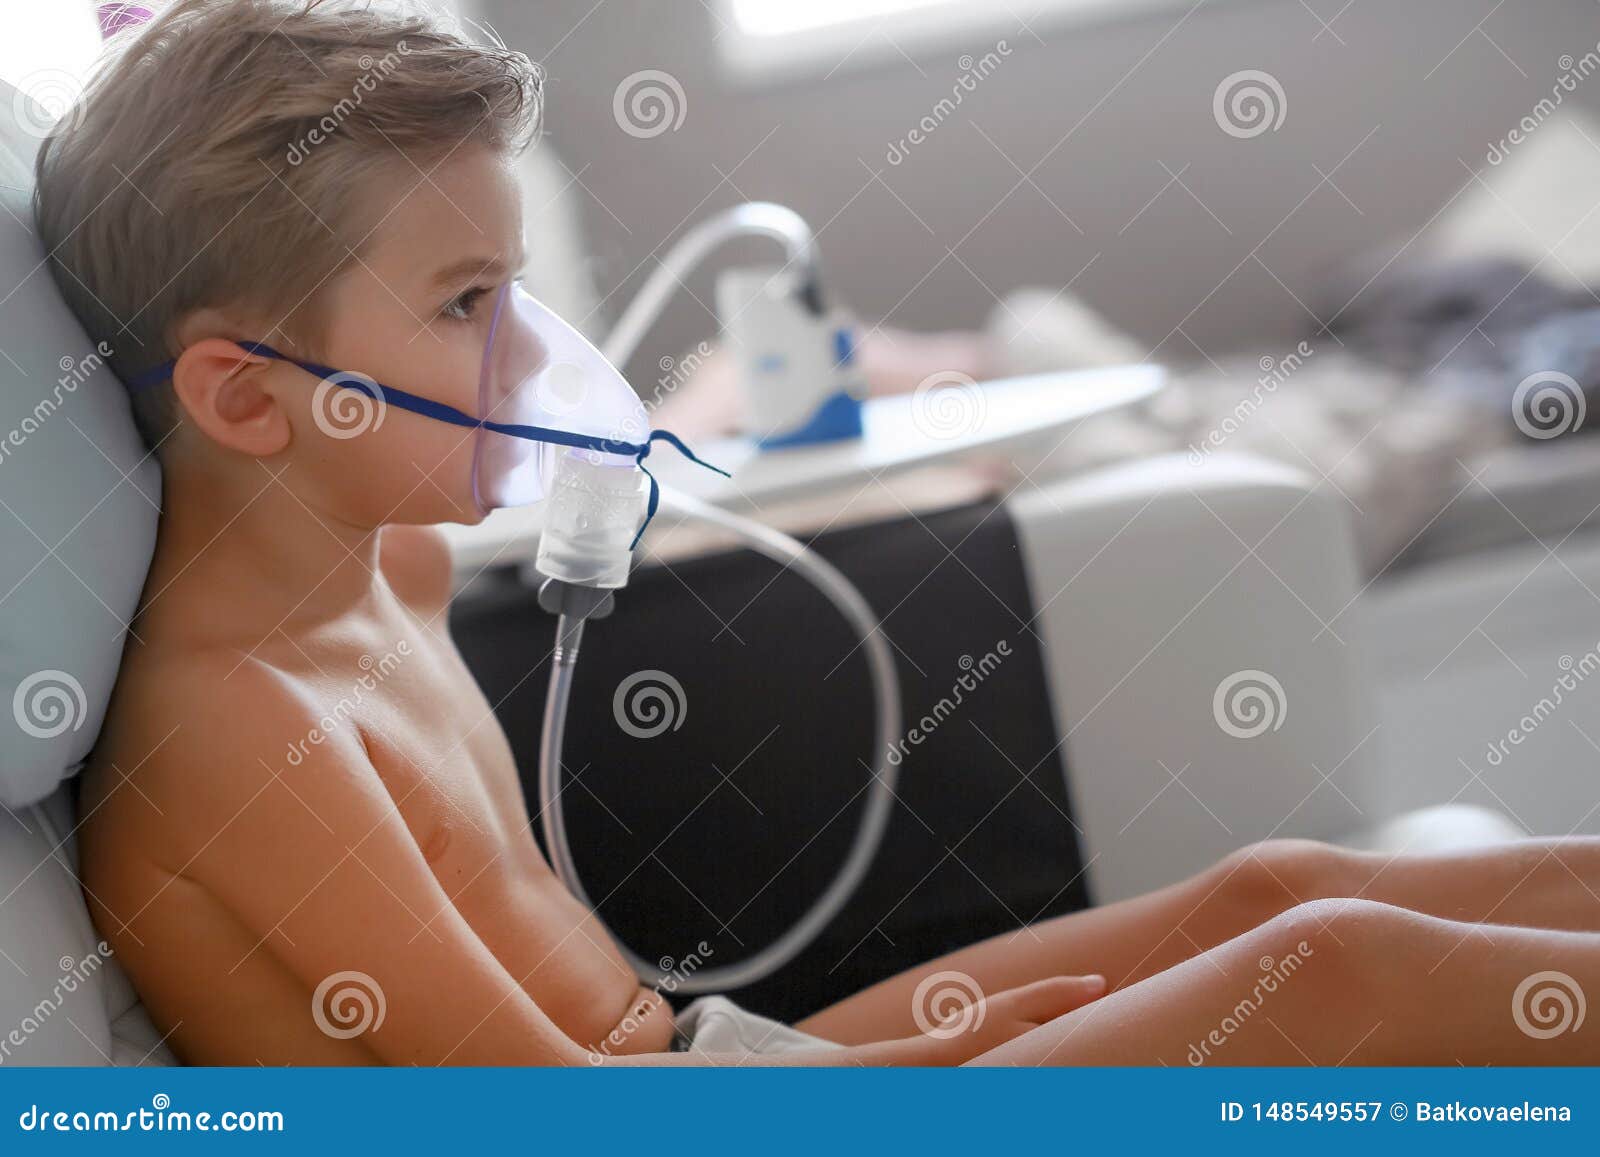 petit garçon malade avec inhalateur pour le traitement de la toux. enfant  malade faisant de l'inhalation sur son lit. saison de la grippe.  intervention médicale à domicile. intérieur et vêtements aux couleurs